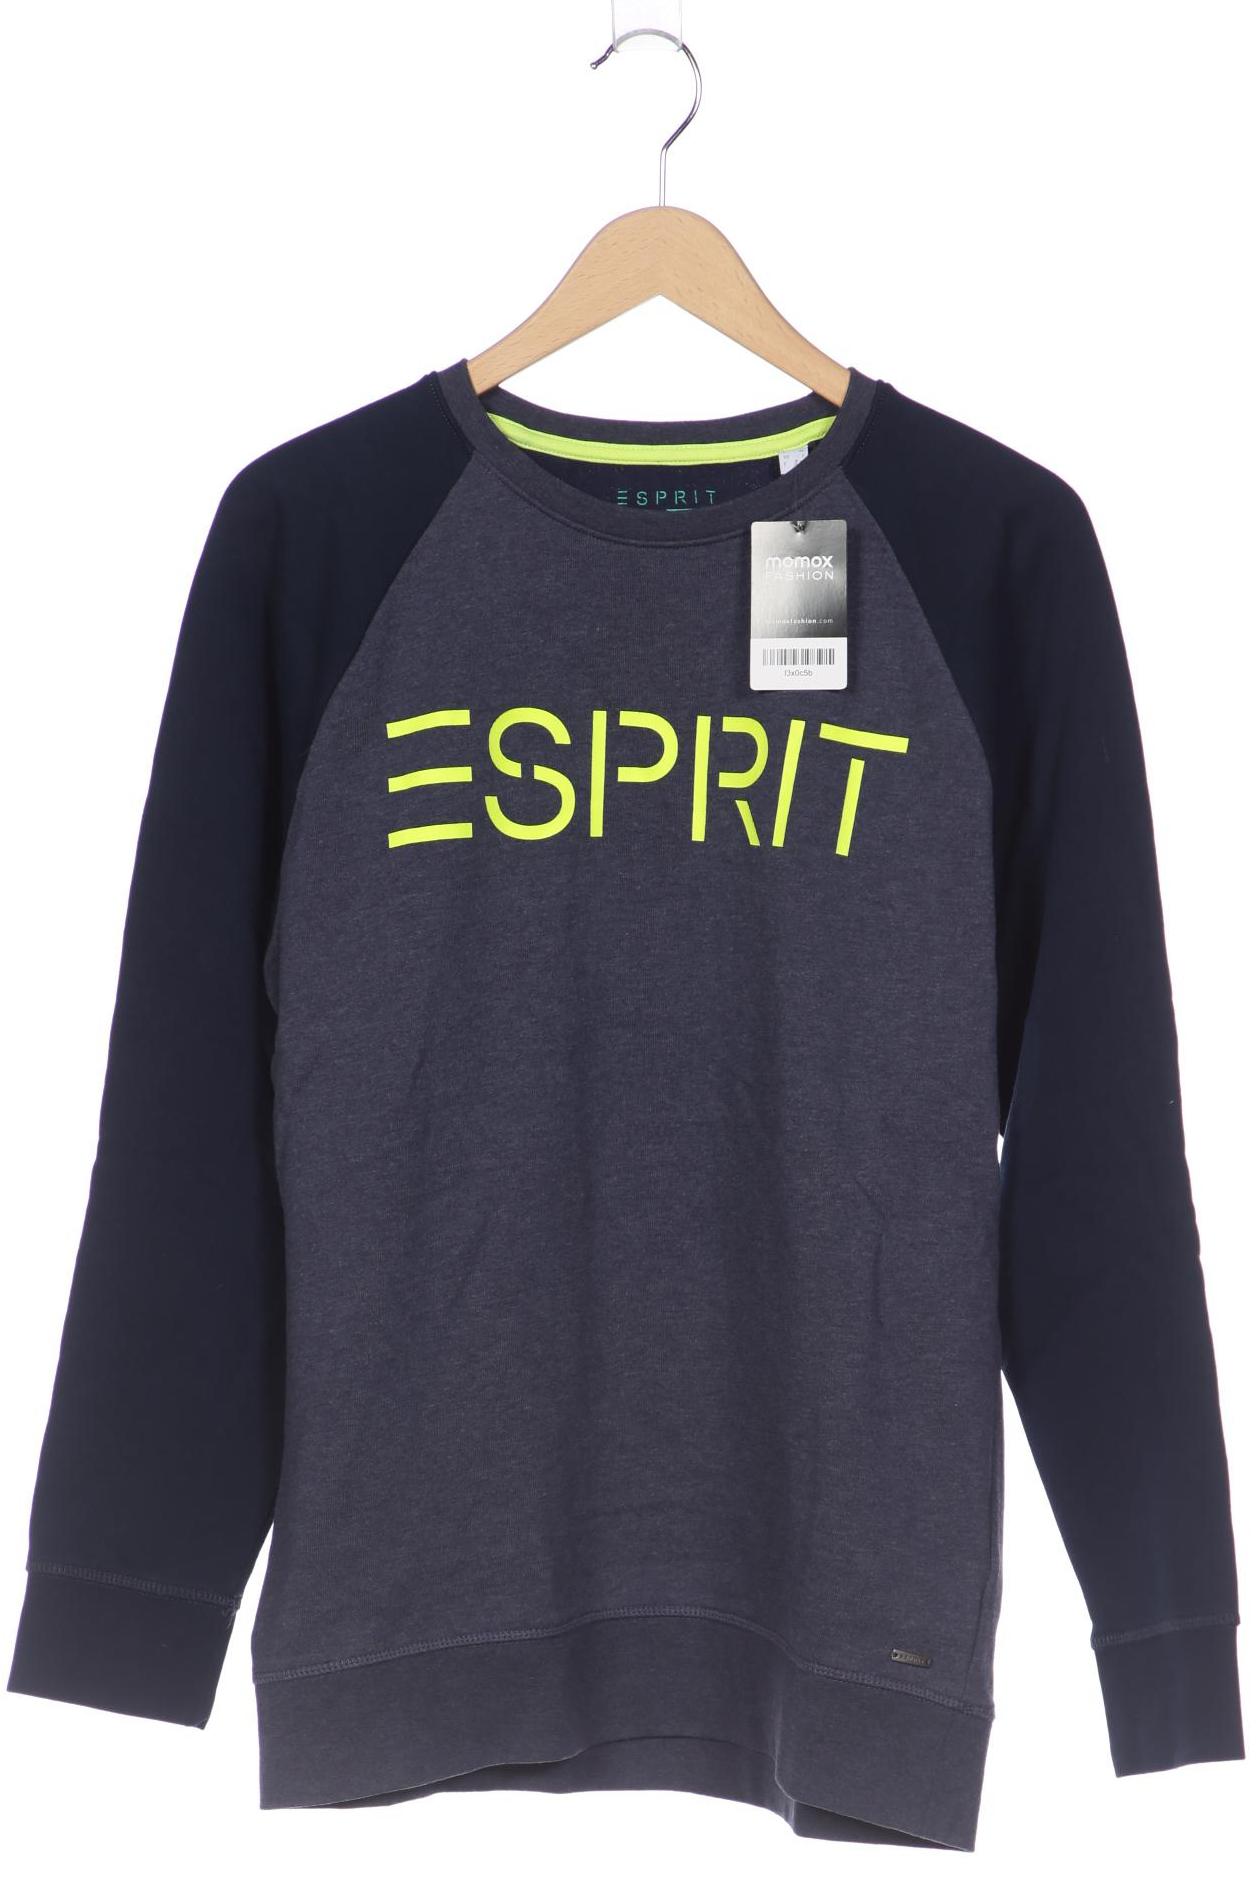 Esprit Herren Sweatshirt, blau von Esprit